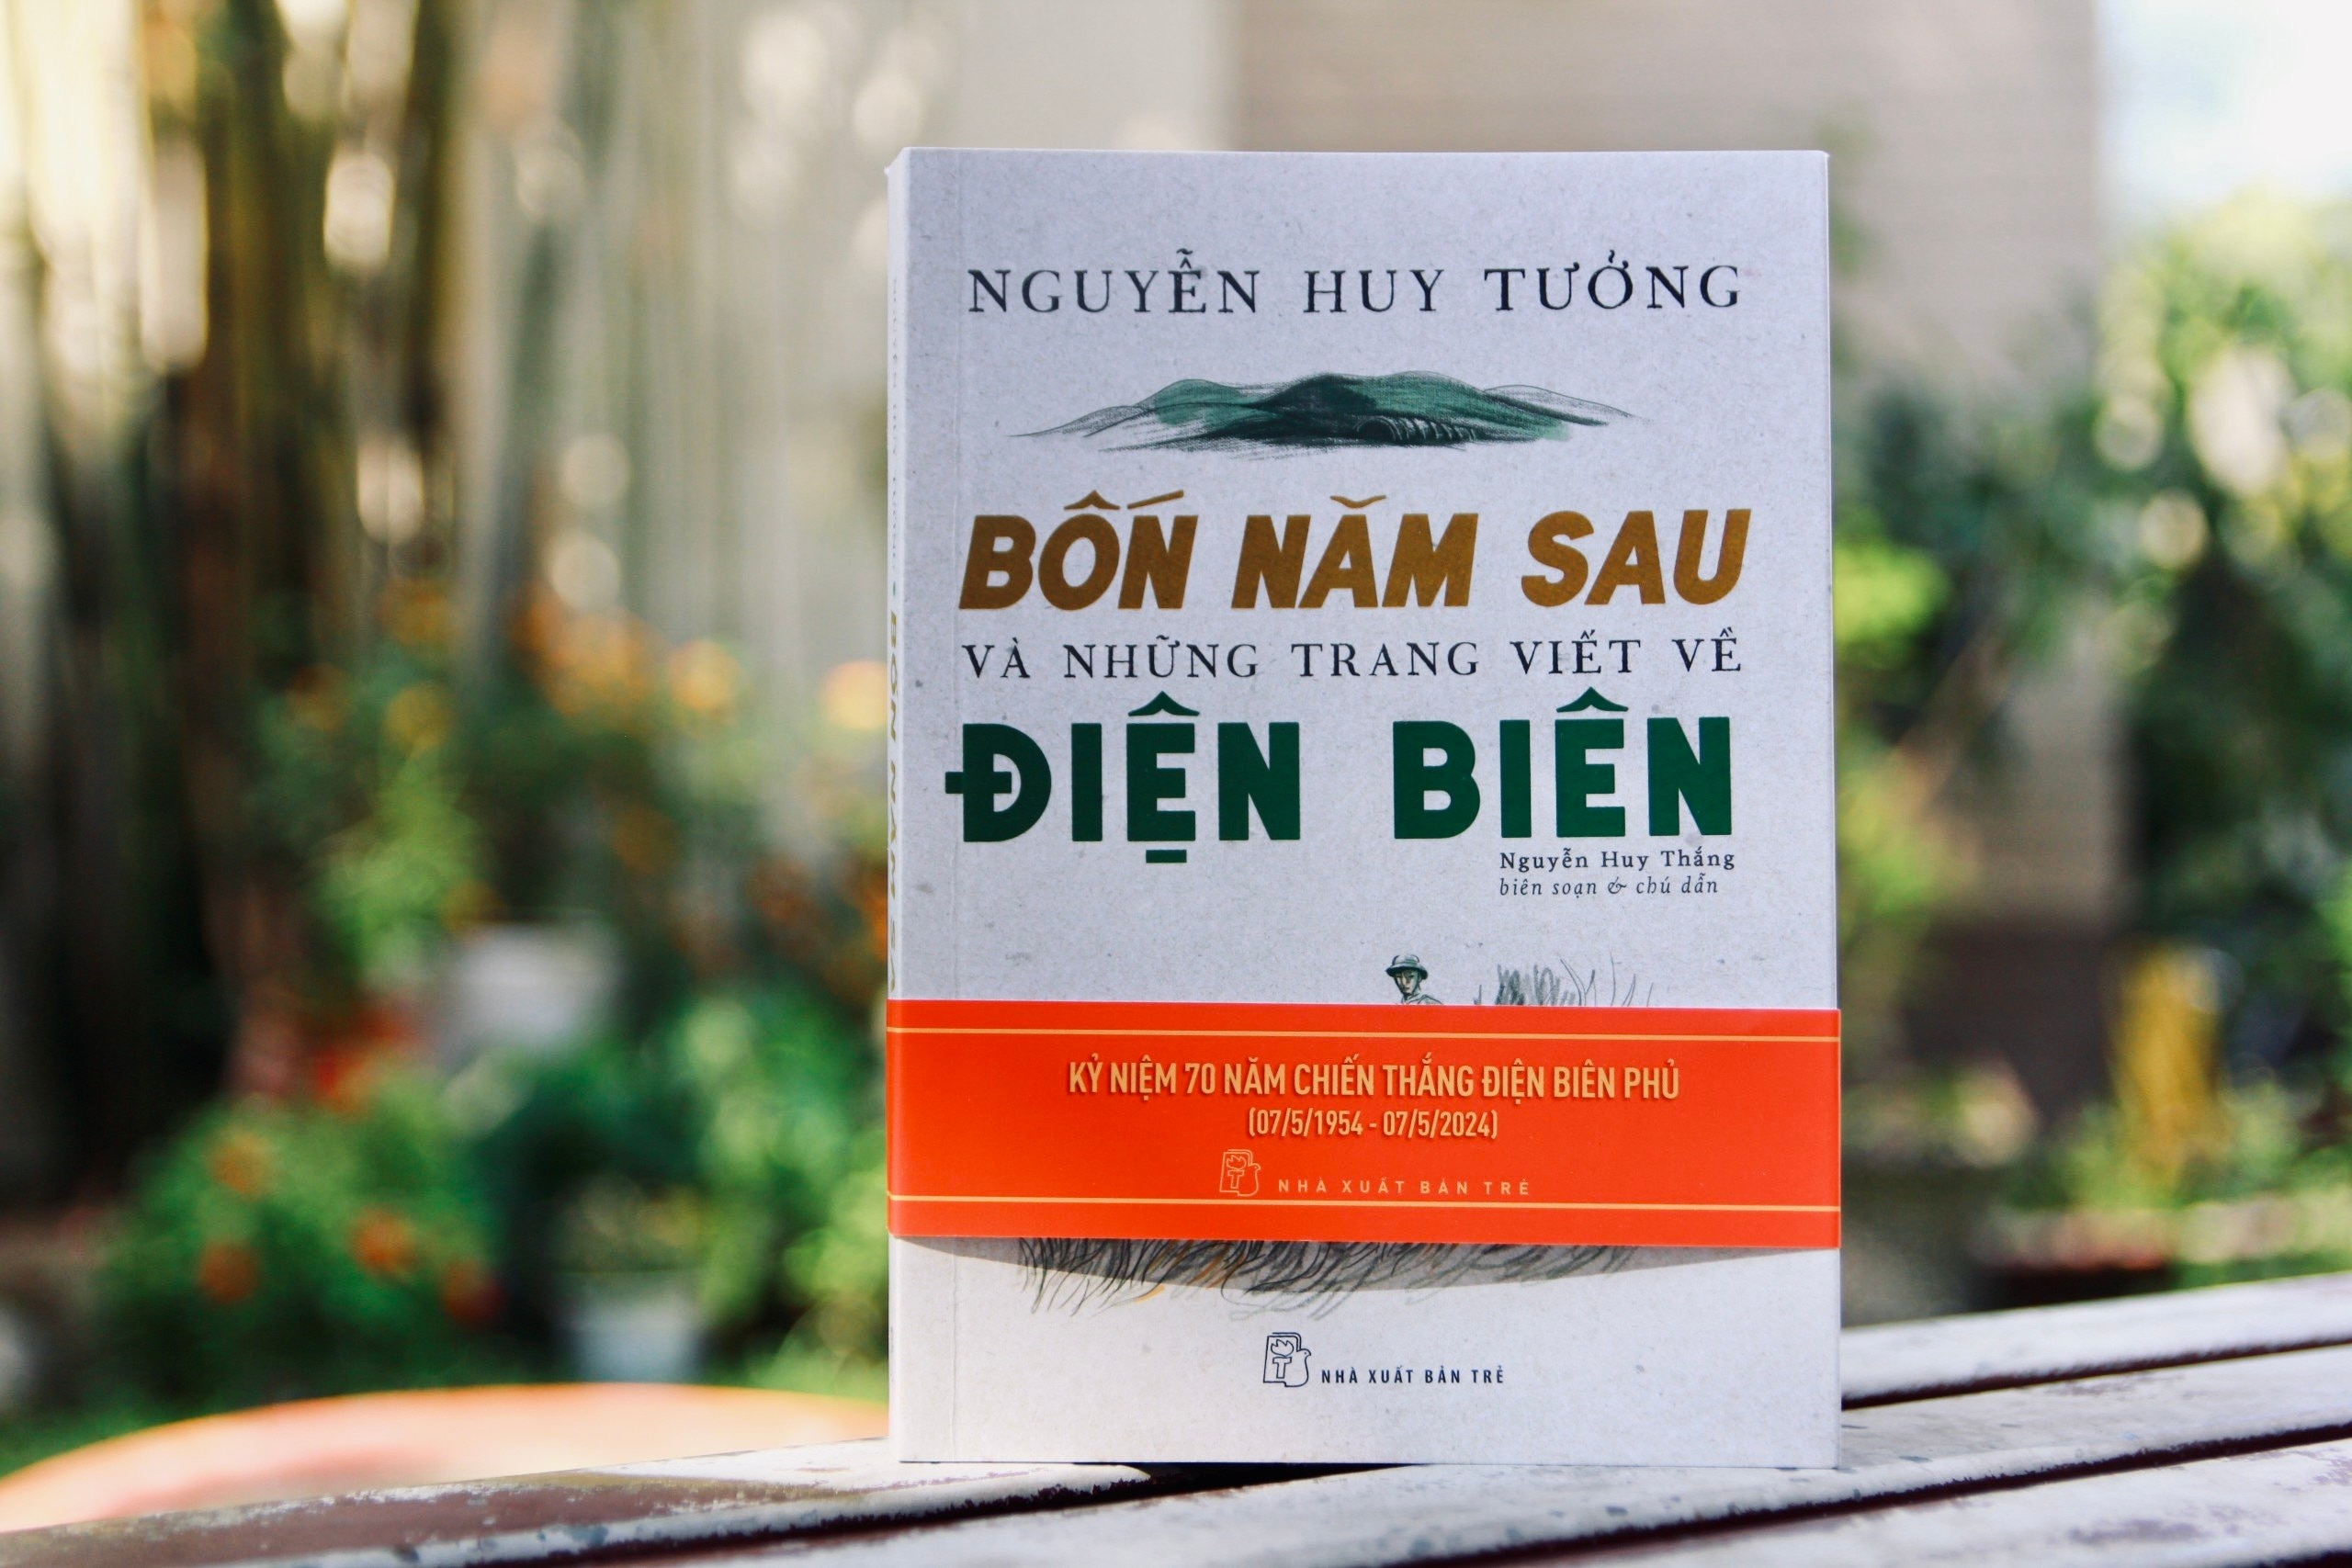 Bìa tác phẩm Bốn năm sau và những trang viết về Điện Biên của nhà văn Nguyễn Huy Tưởng